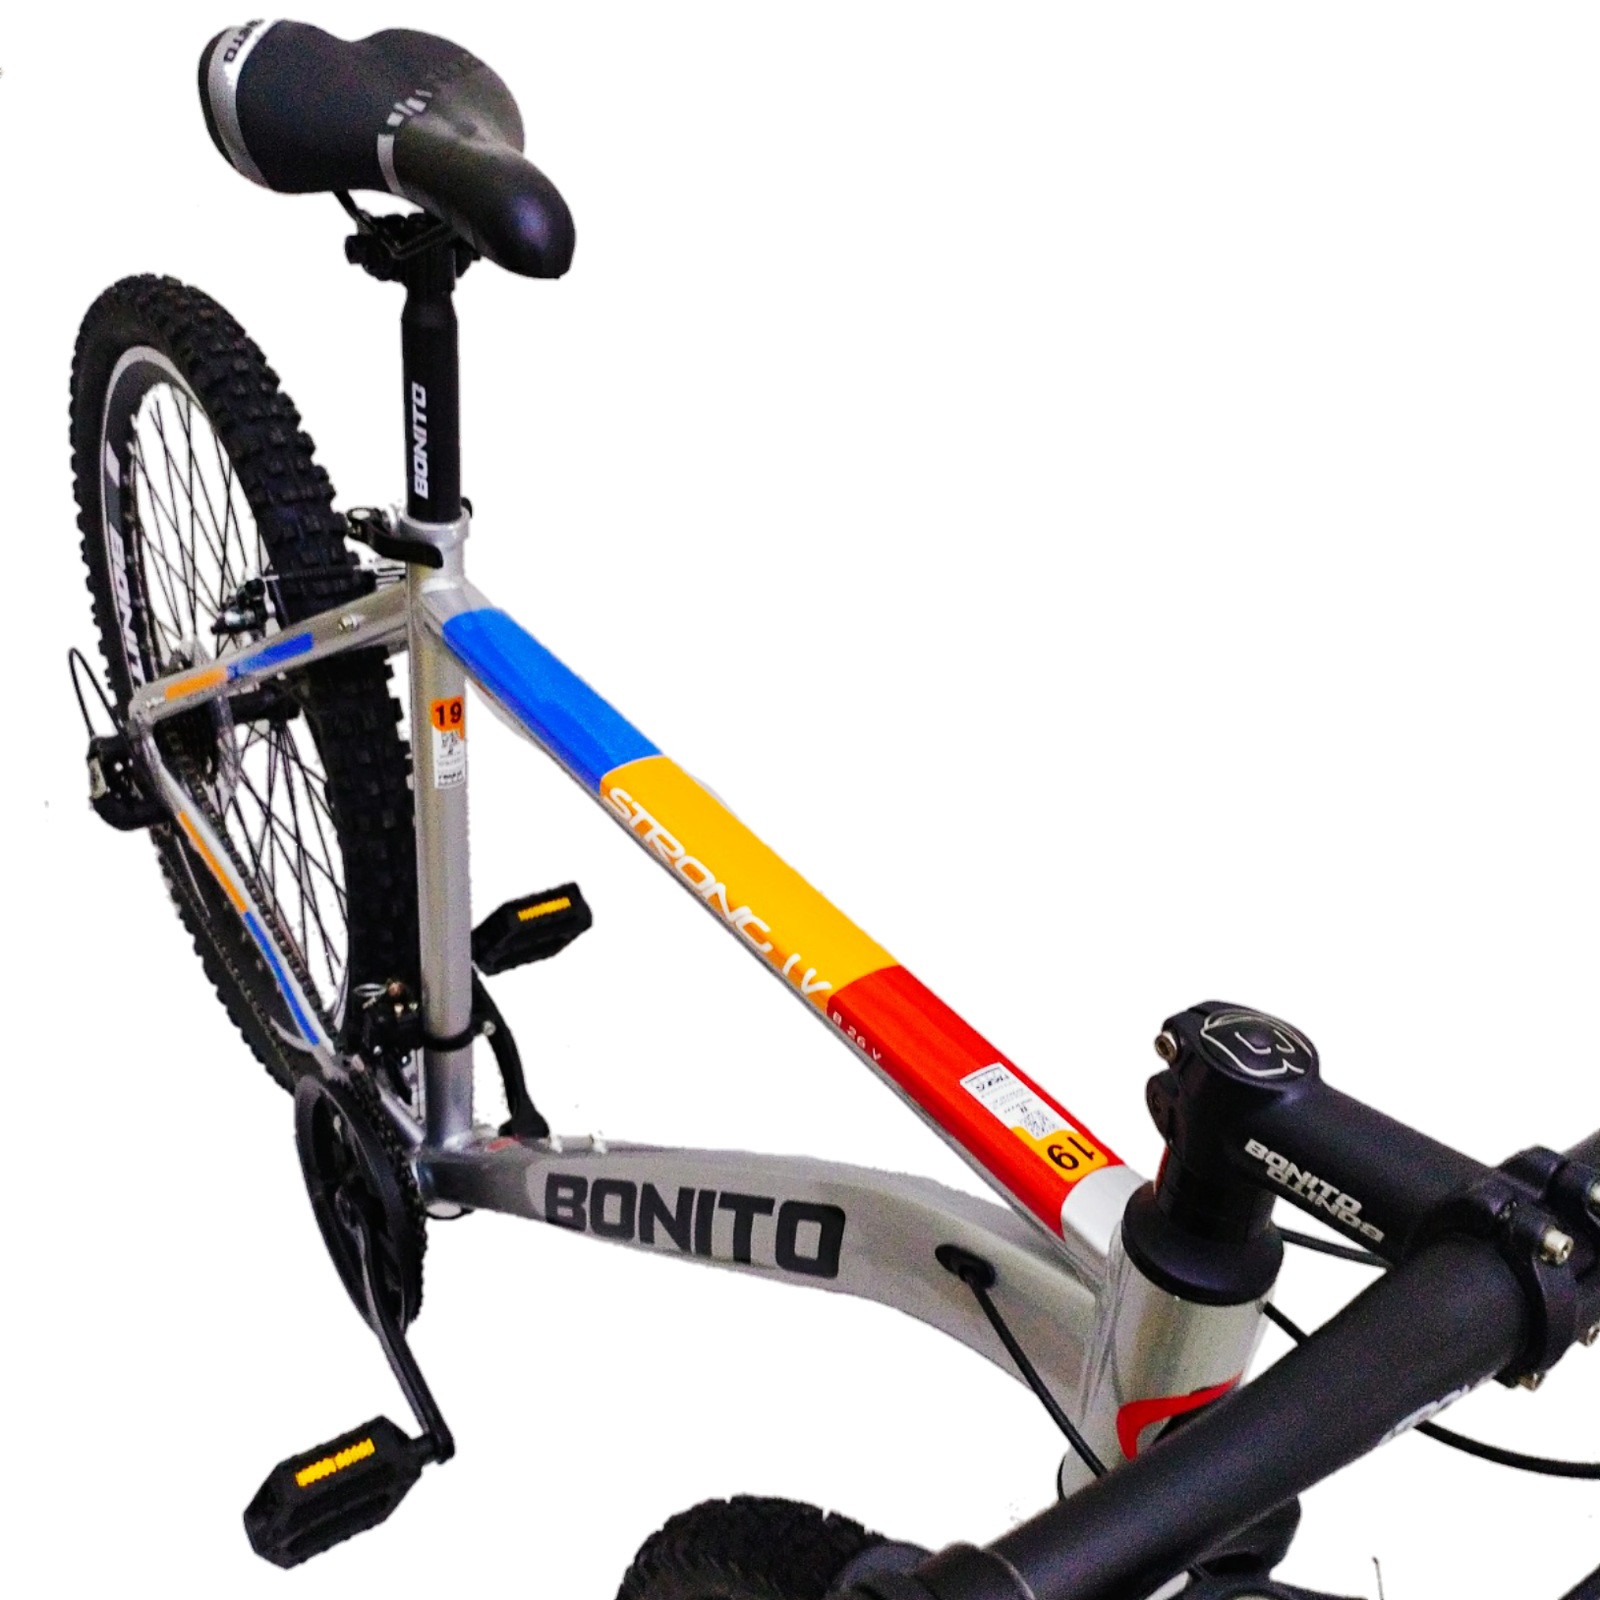 دوچرخه کوهستان بونیتو مدل استرانگ 1V